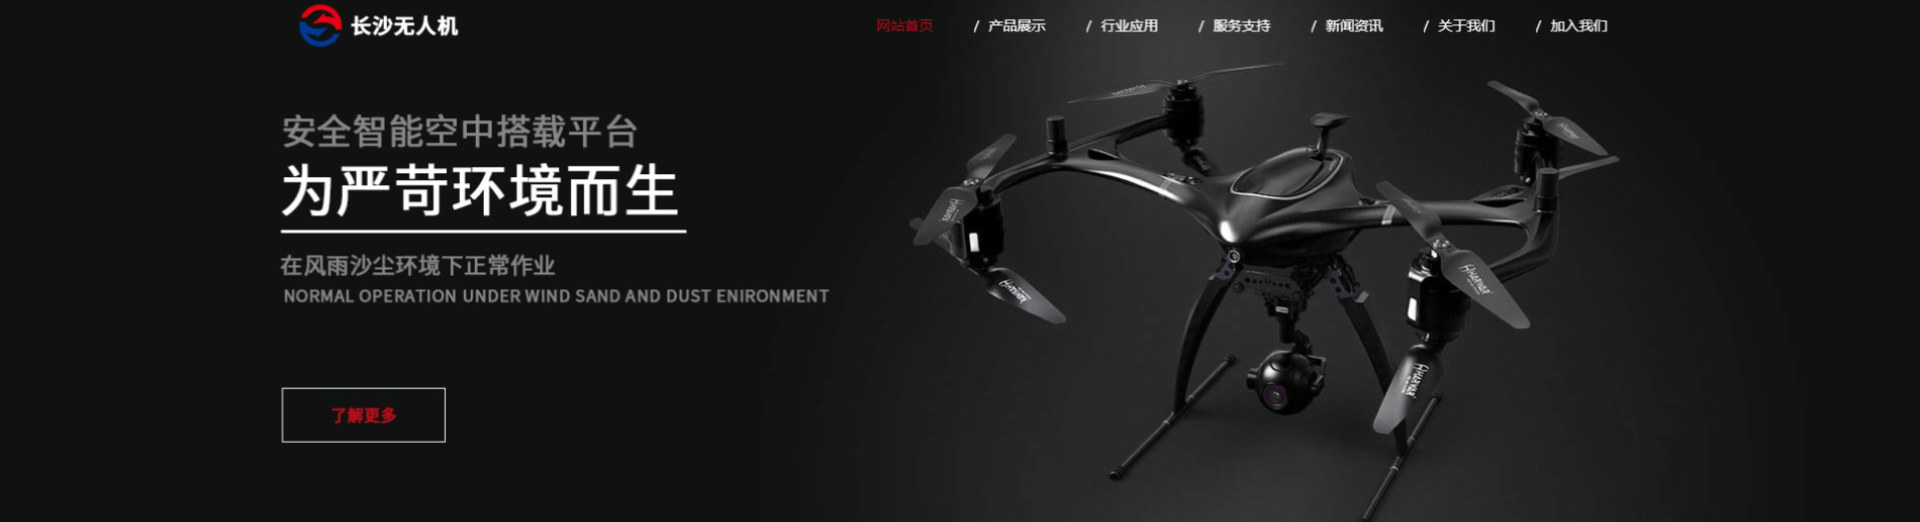 无人直升机公司响应式网站模板案例